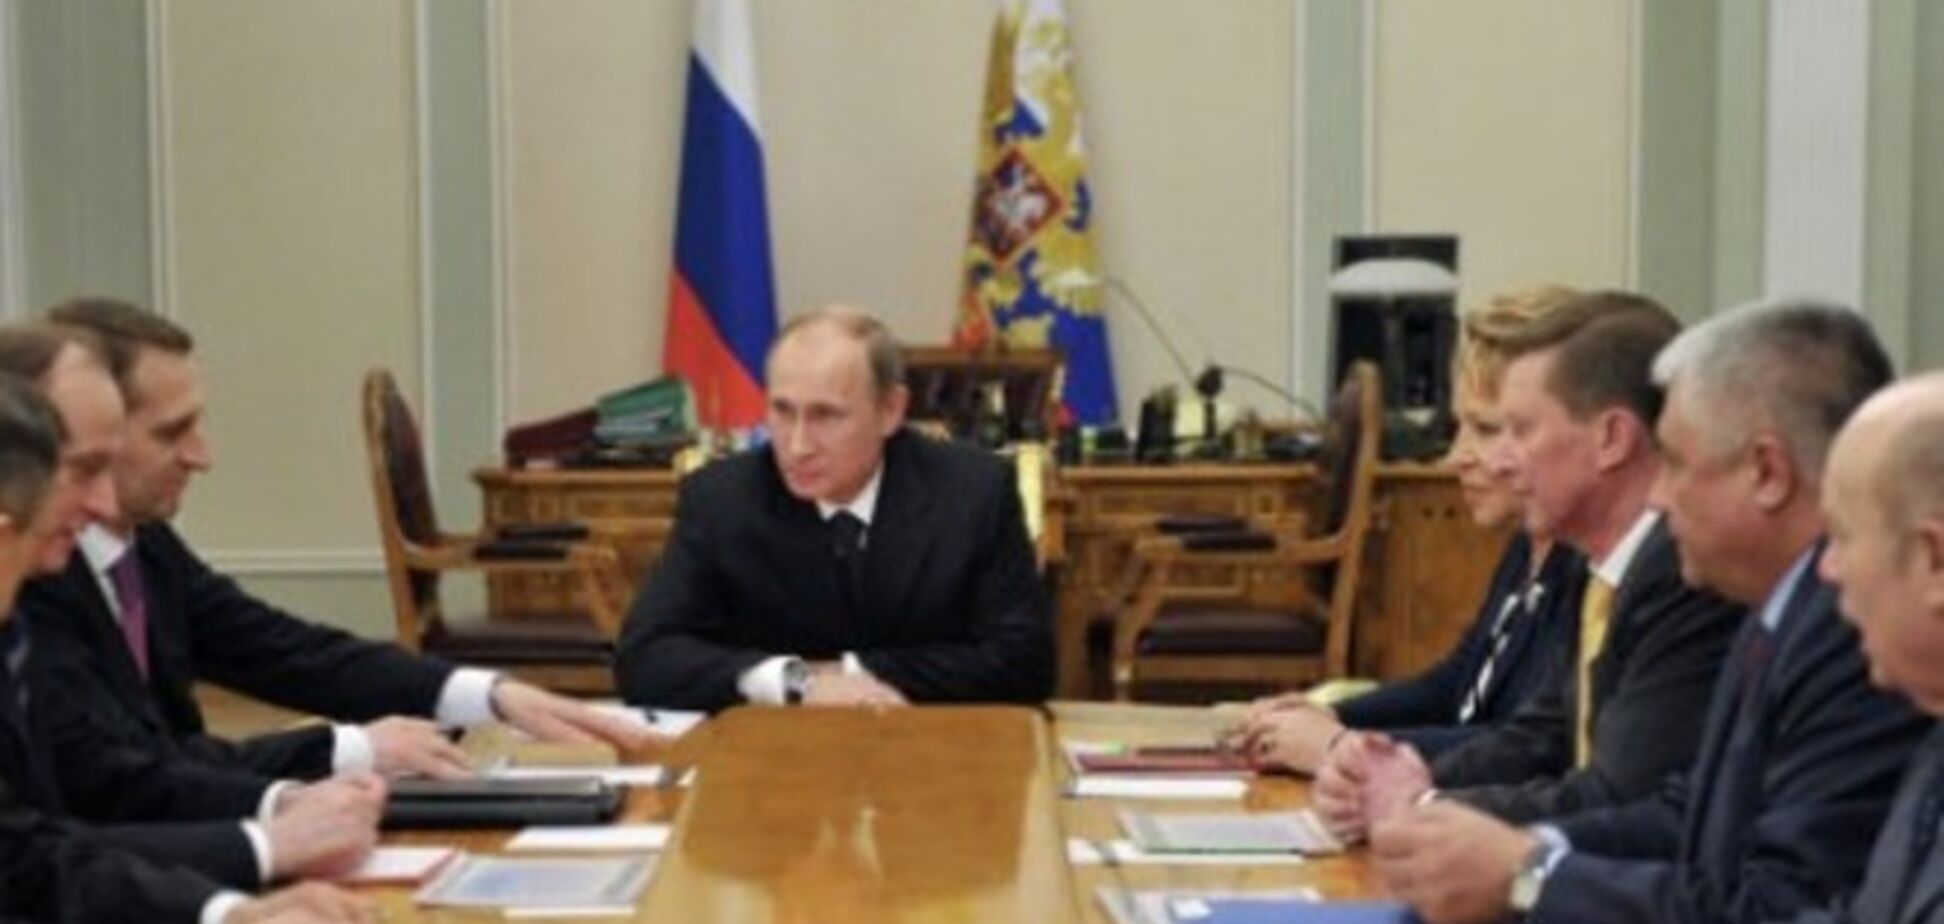 Путин пообещал 'адекватно реагировать' на попытки ослабить международные позиции России